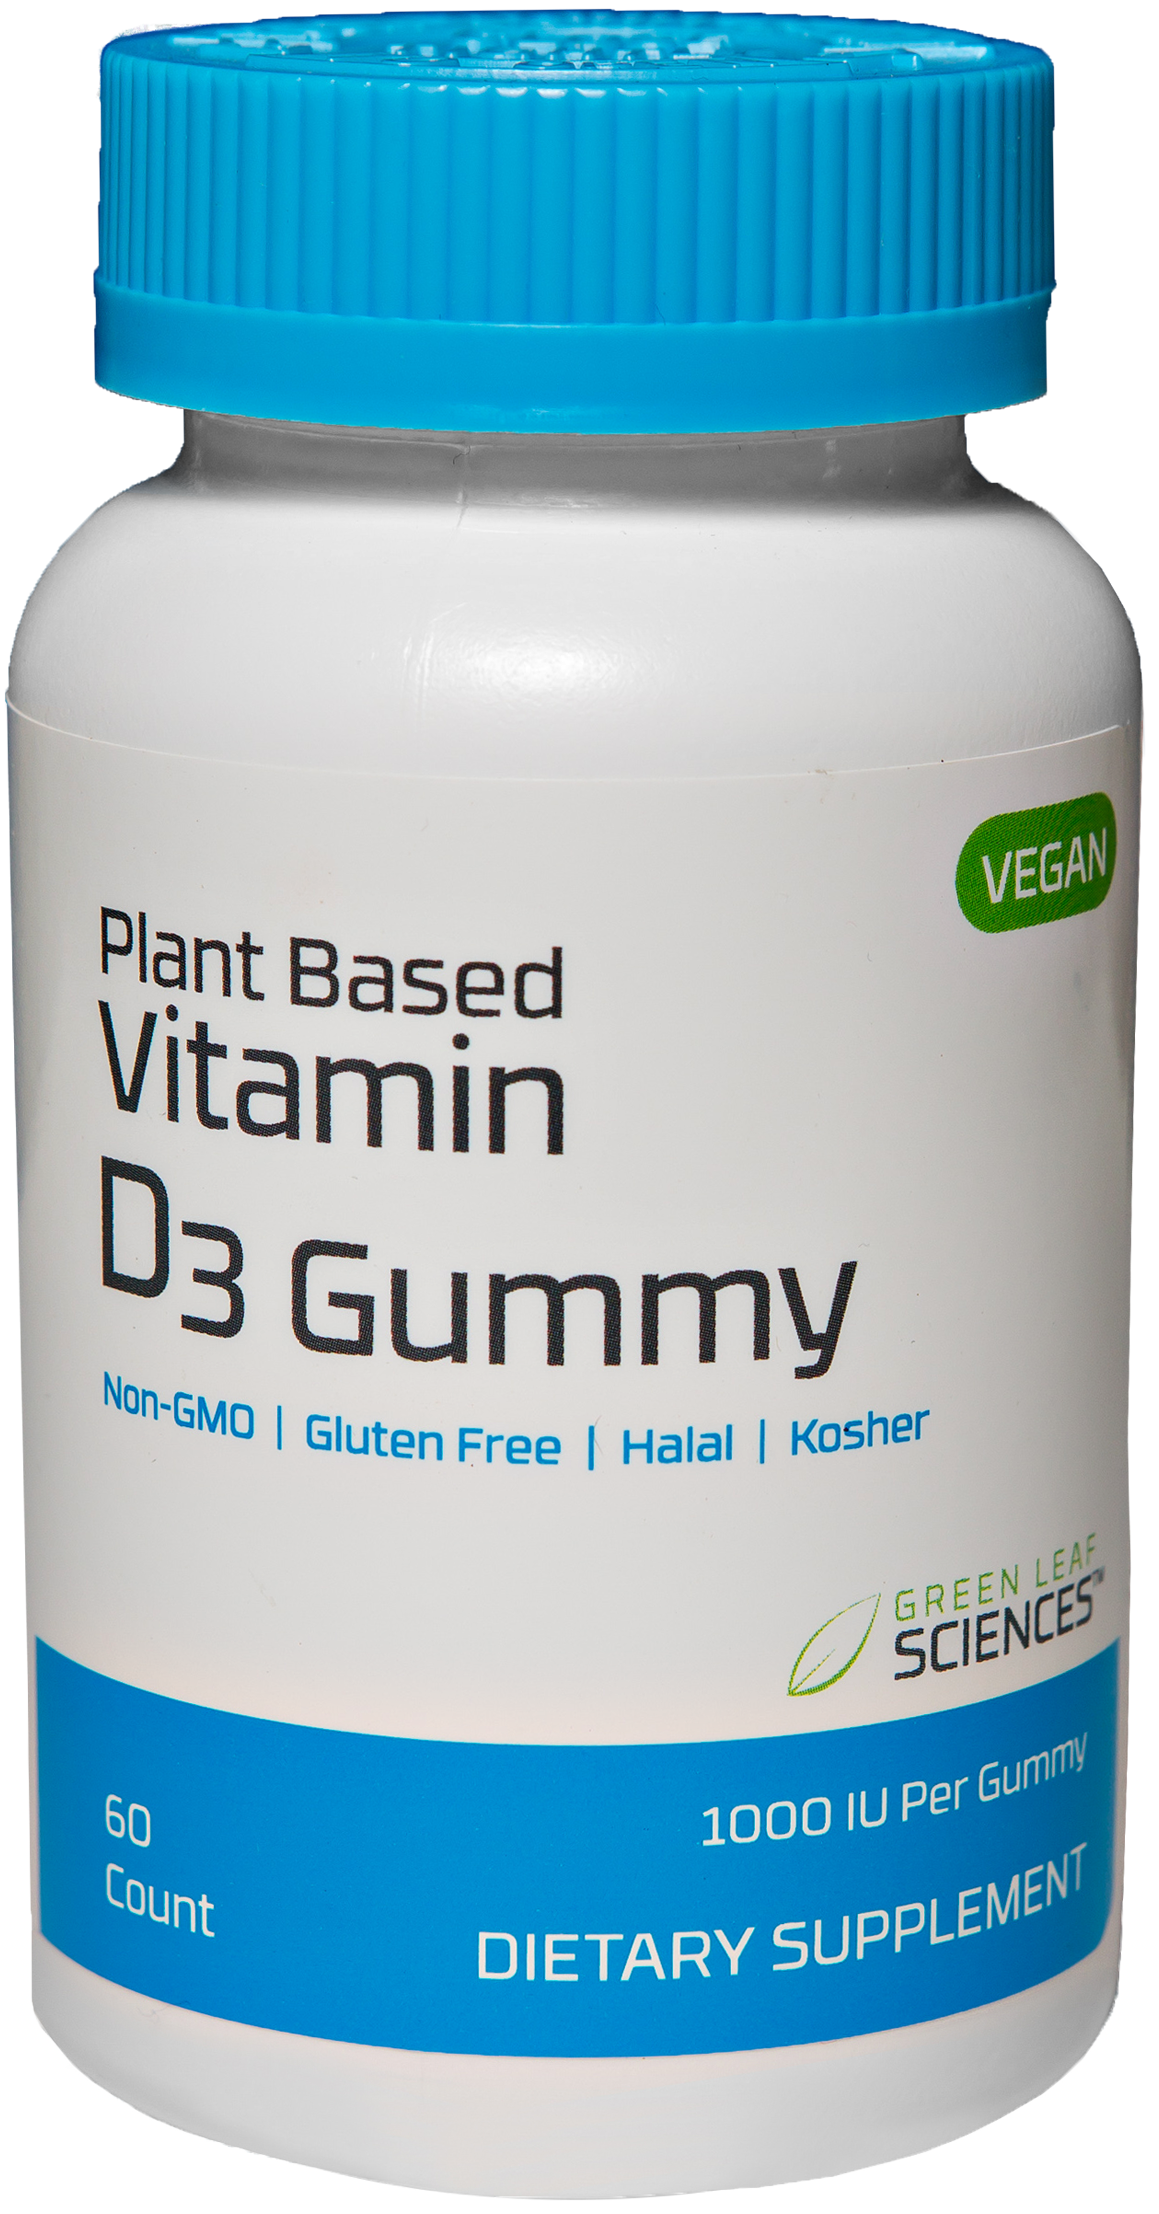 Vitamin D3 Gummy bottle